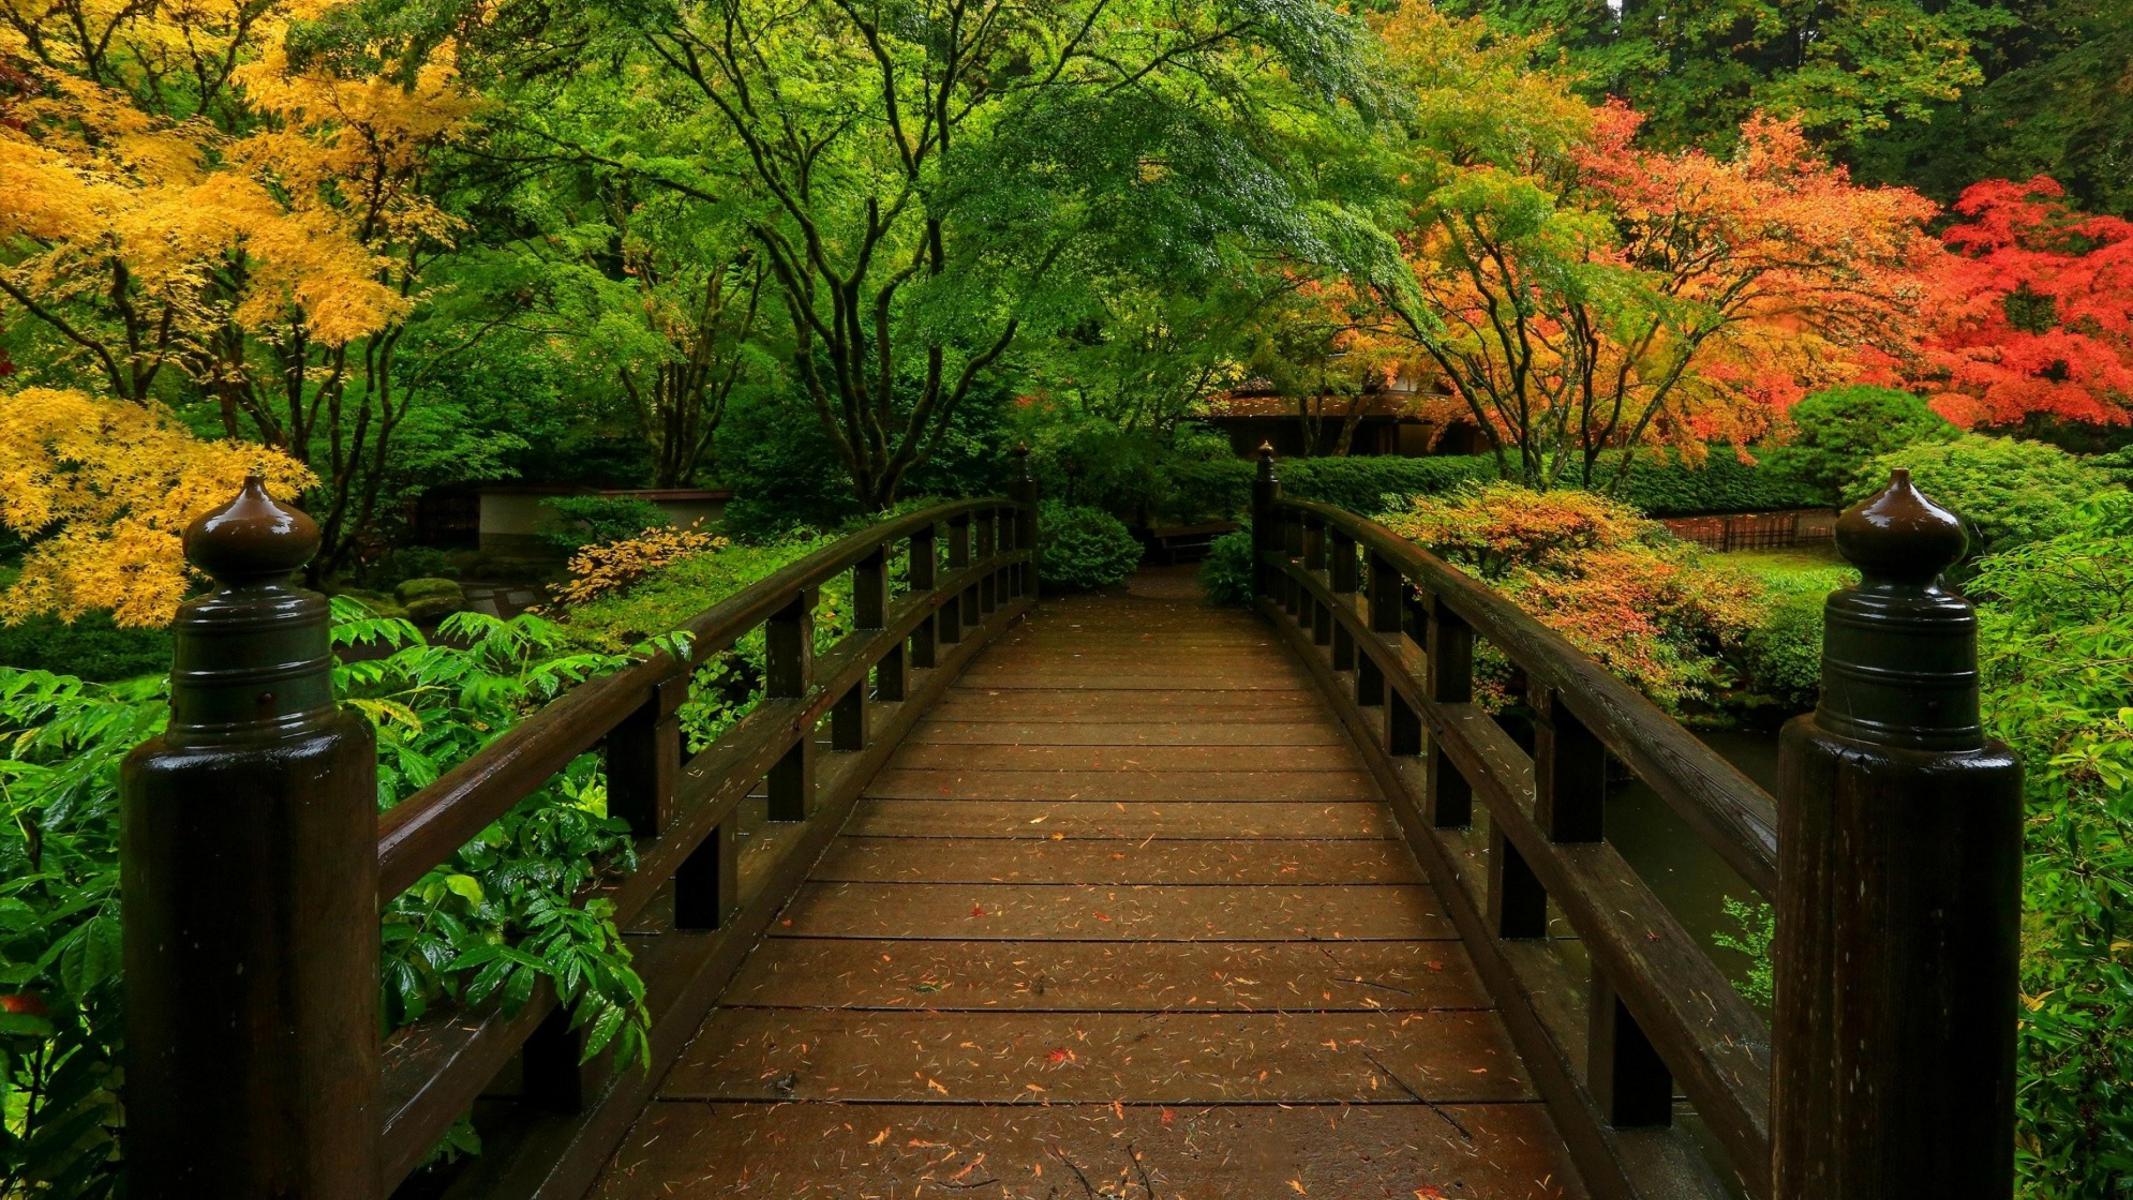 壁紙sfondi,自然,自然の風景,葉,木,秋